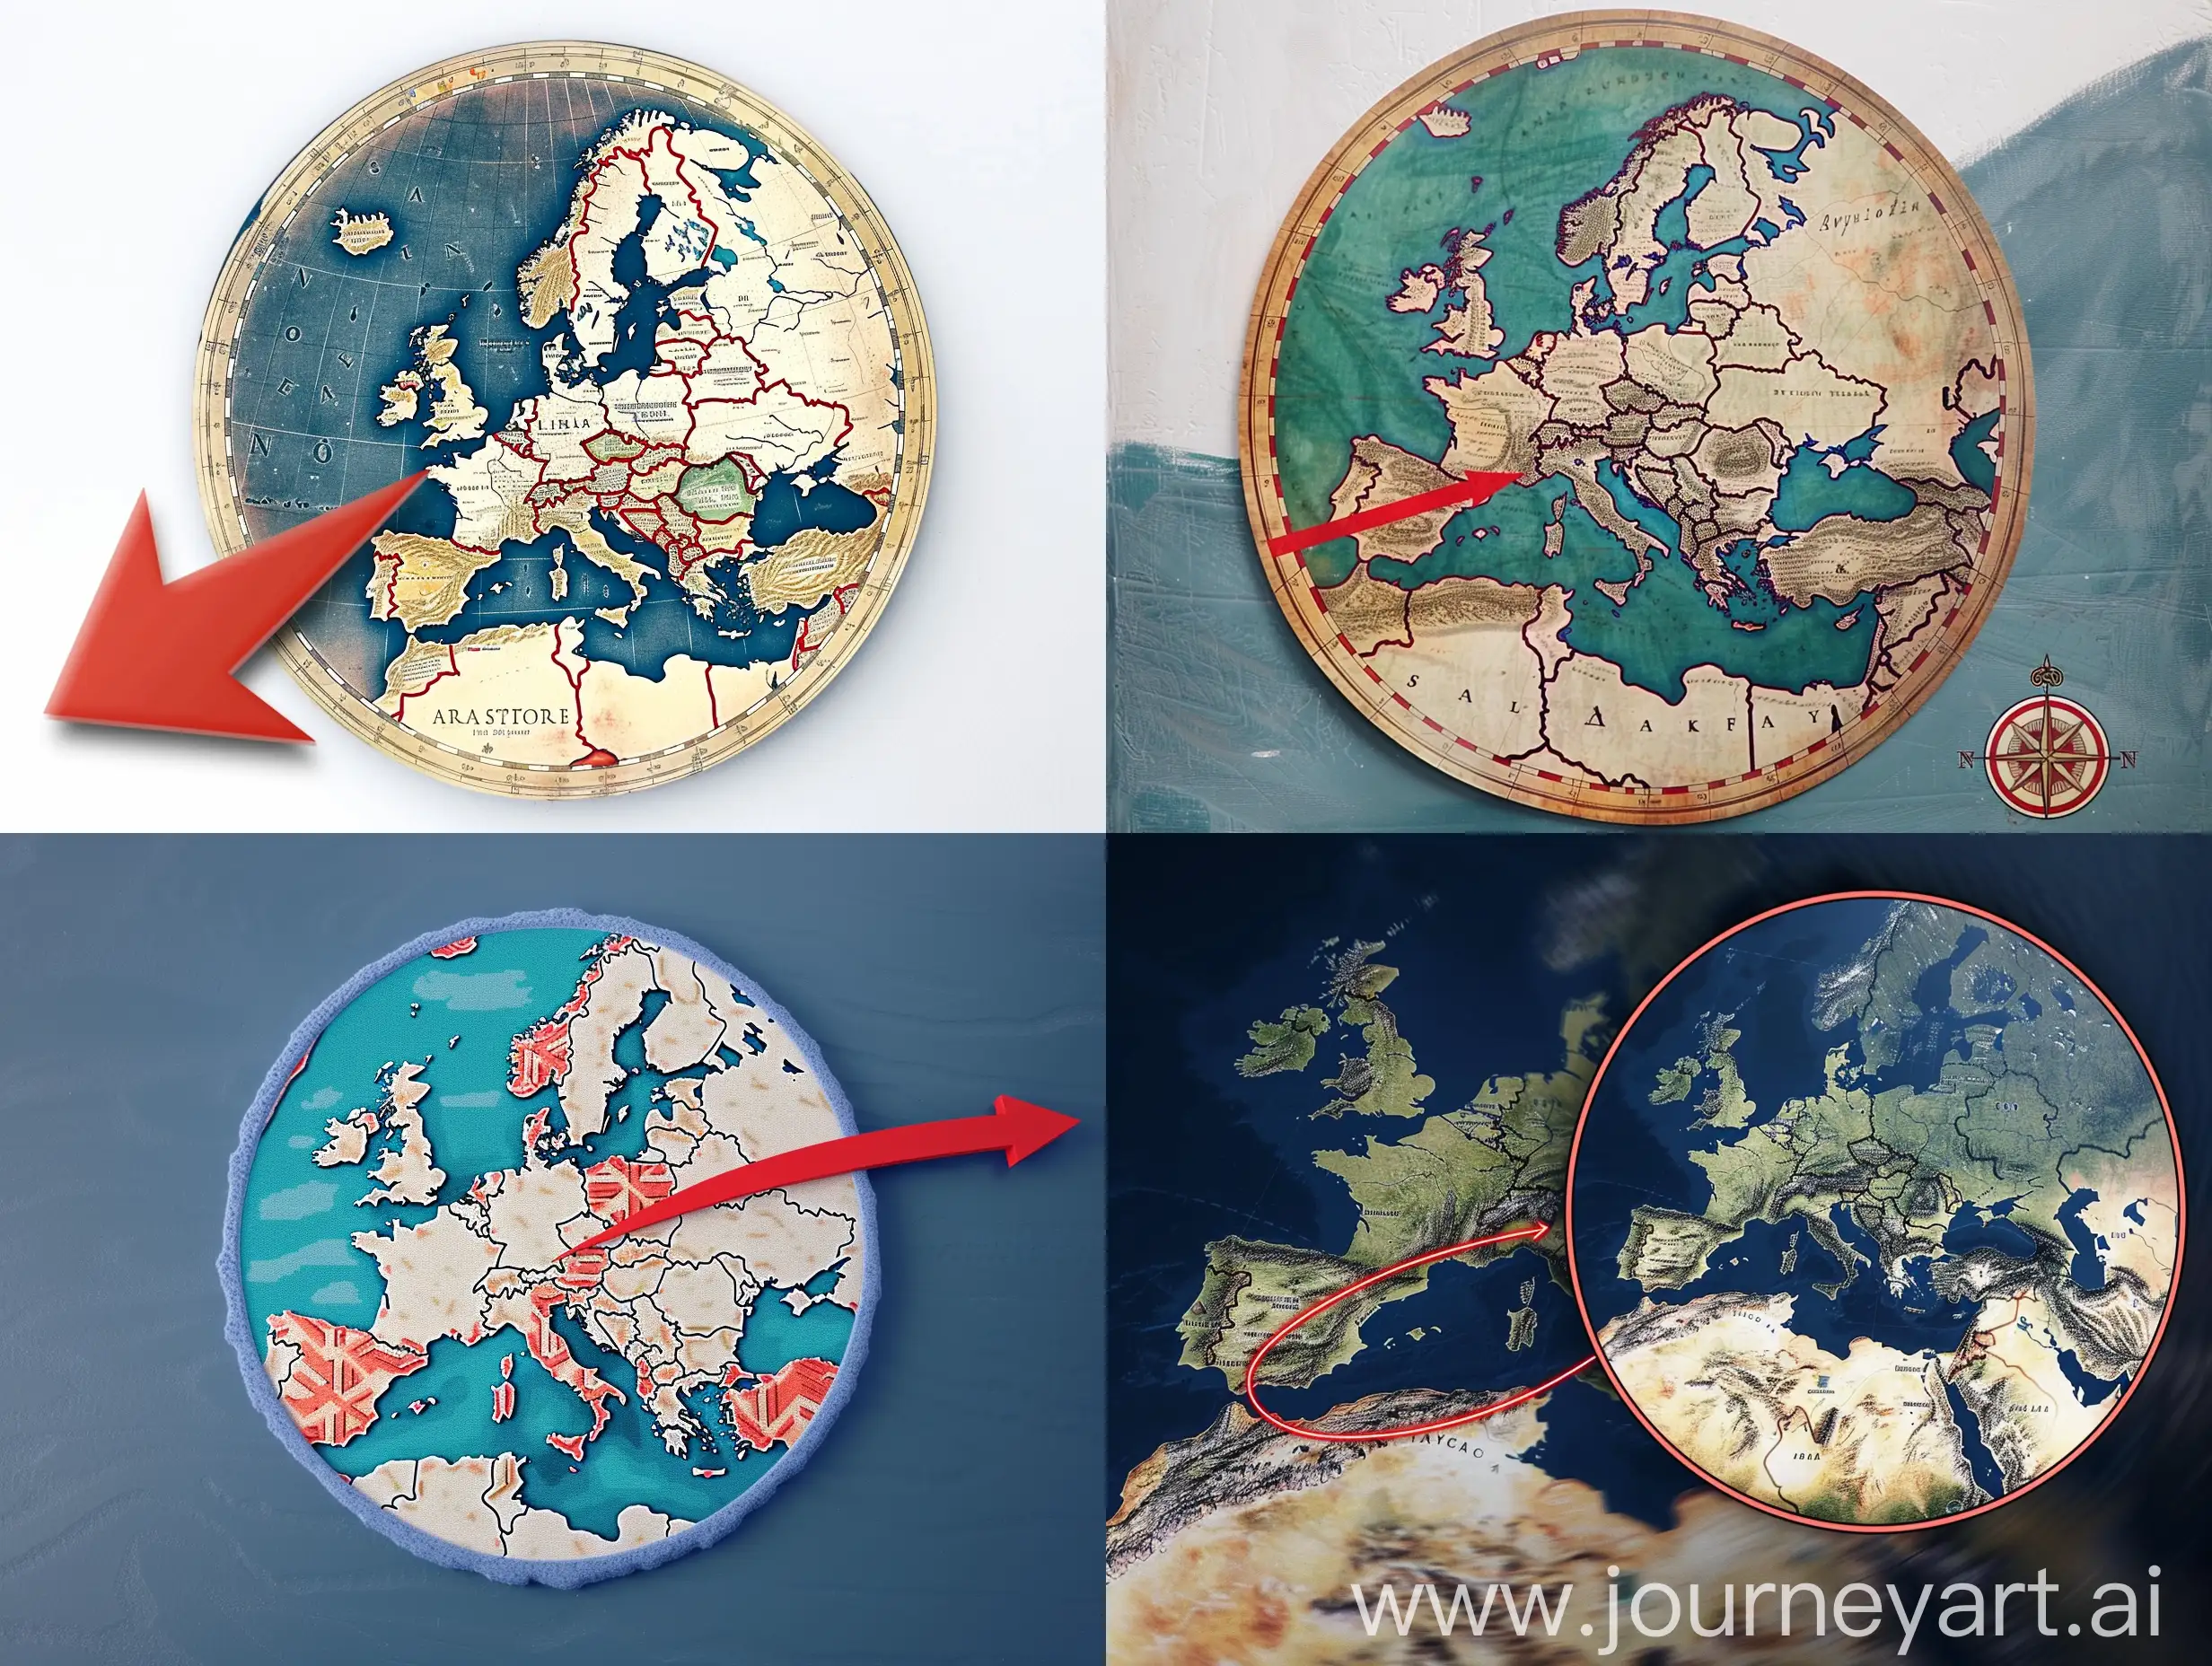 Сделай карту Европы в круге и рядом красная стрелочка